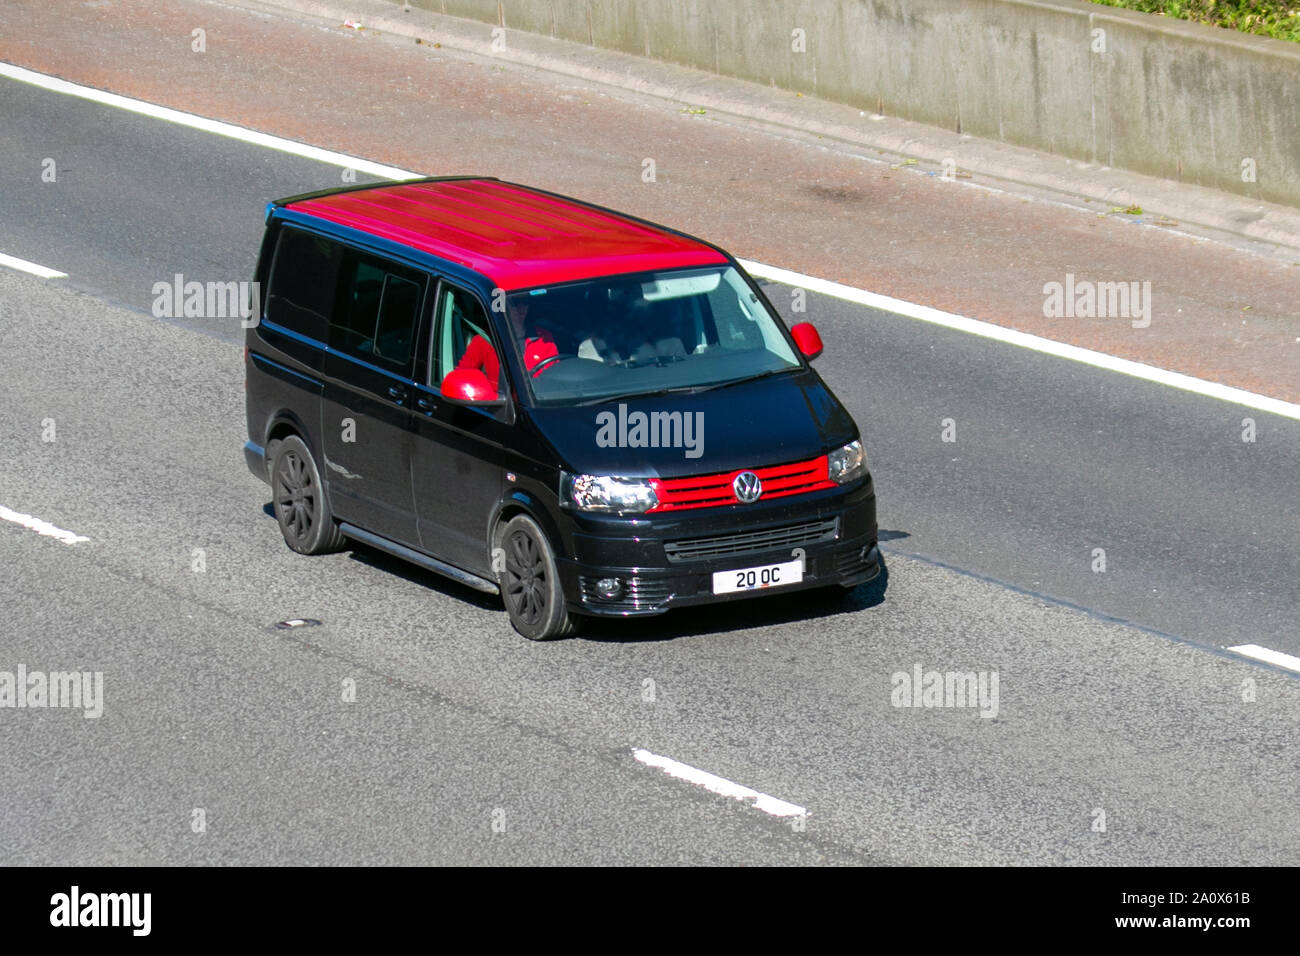 Rouge noir VW Volkswagen transporter 30 Hline 140 TDI transporteur; UK voiture de voiture, transport, moderne, berline, direction sud sur l'autoroute   à 3 voies. Banque D'Images